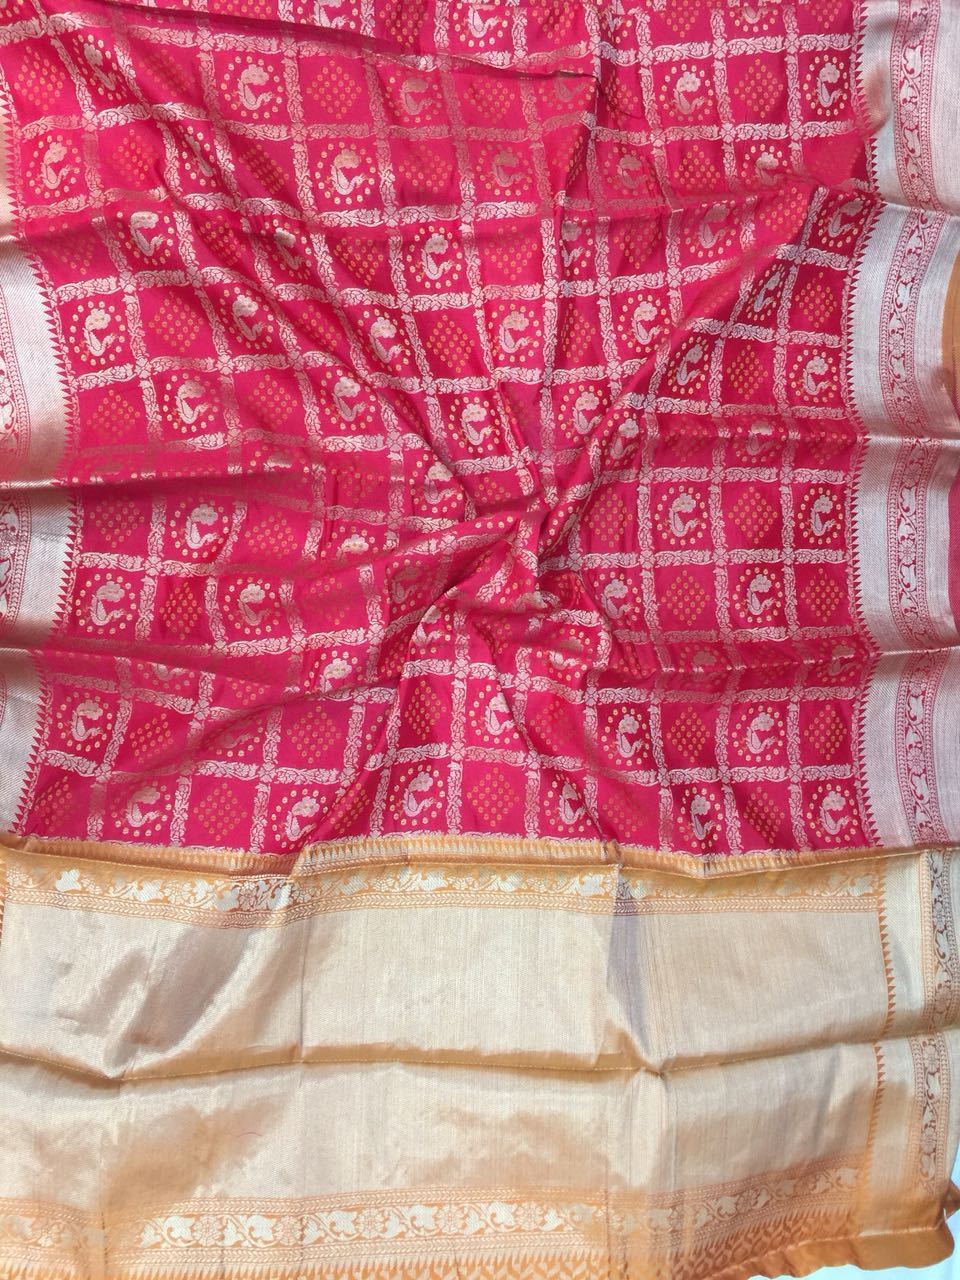 Garnet Grand Patola Banarasi Silk Saree BNS014 pink coloured silk saree lightweight 